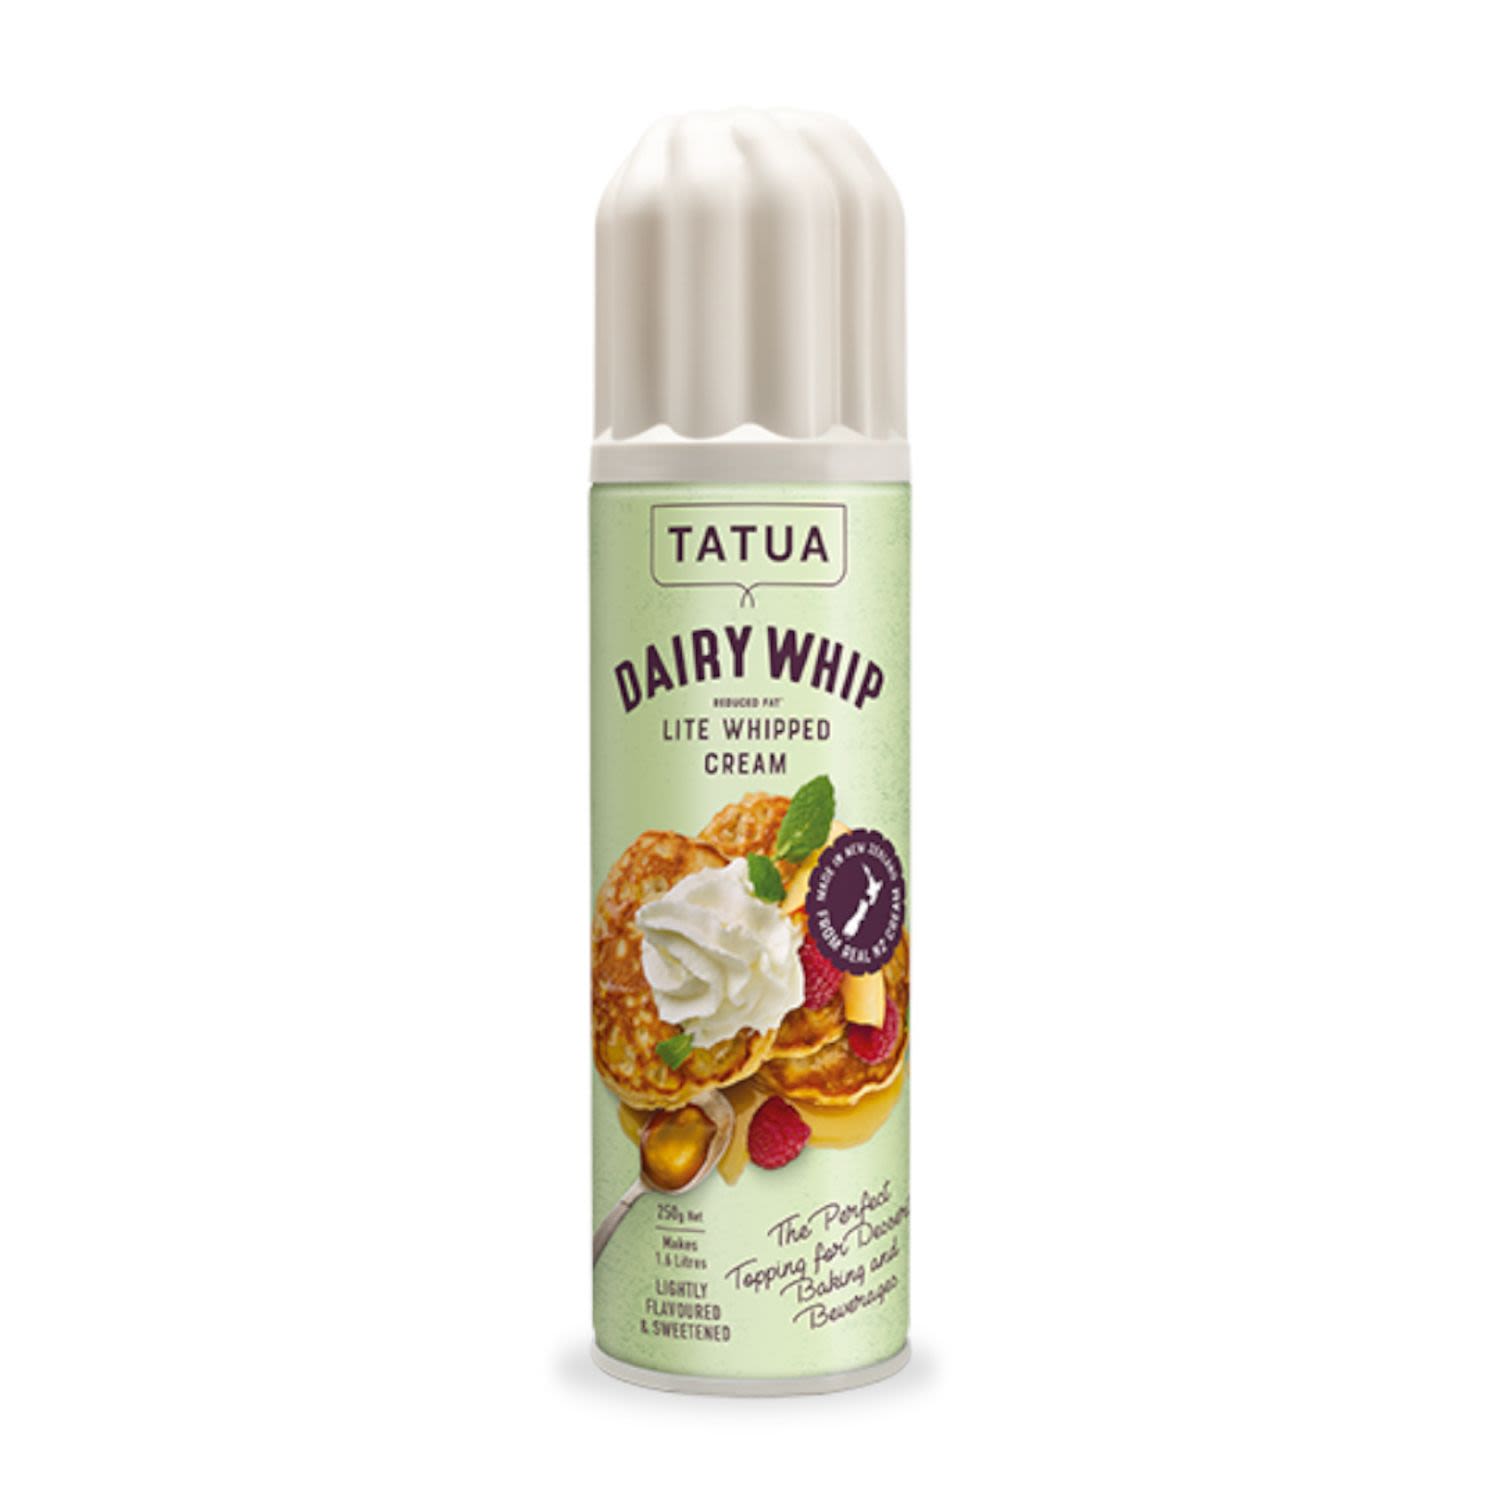 Tatua Dairy Whip Lite Whipped Cream, 250 Gram